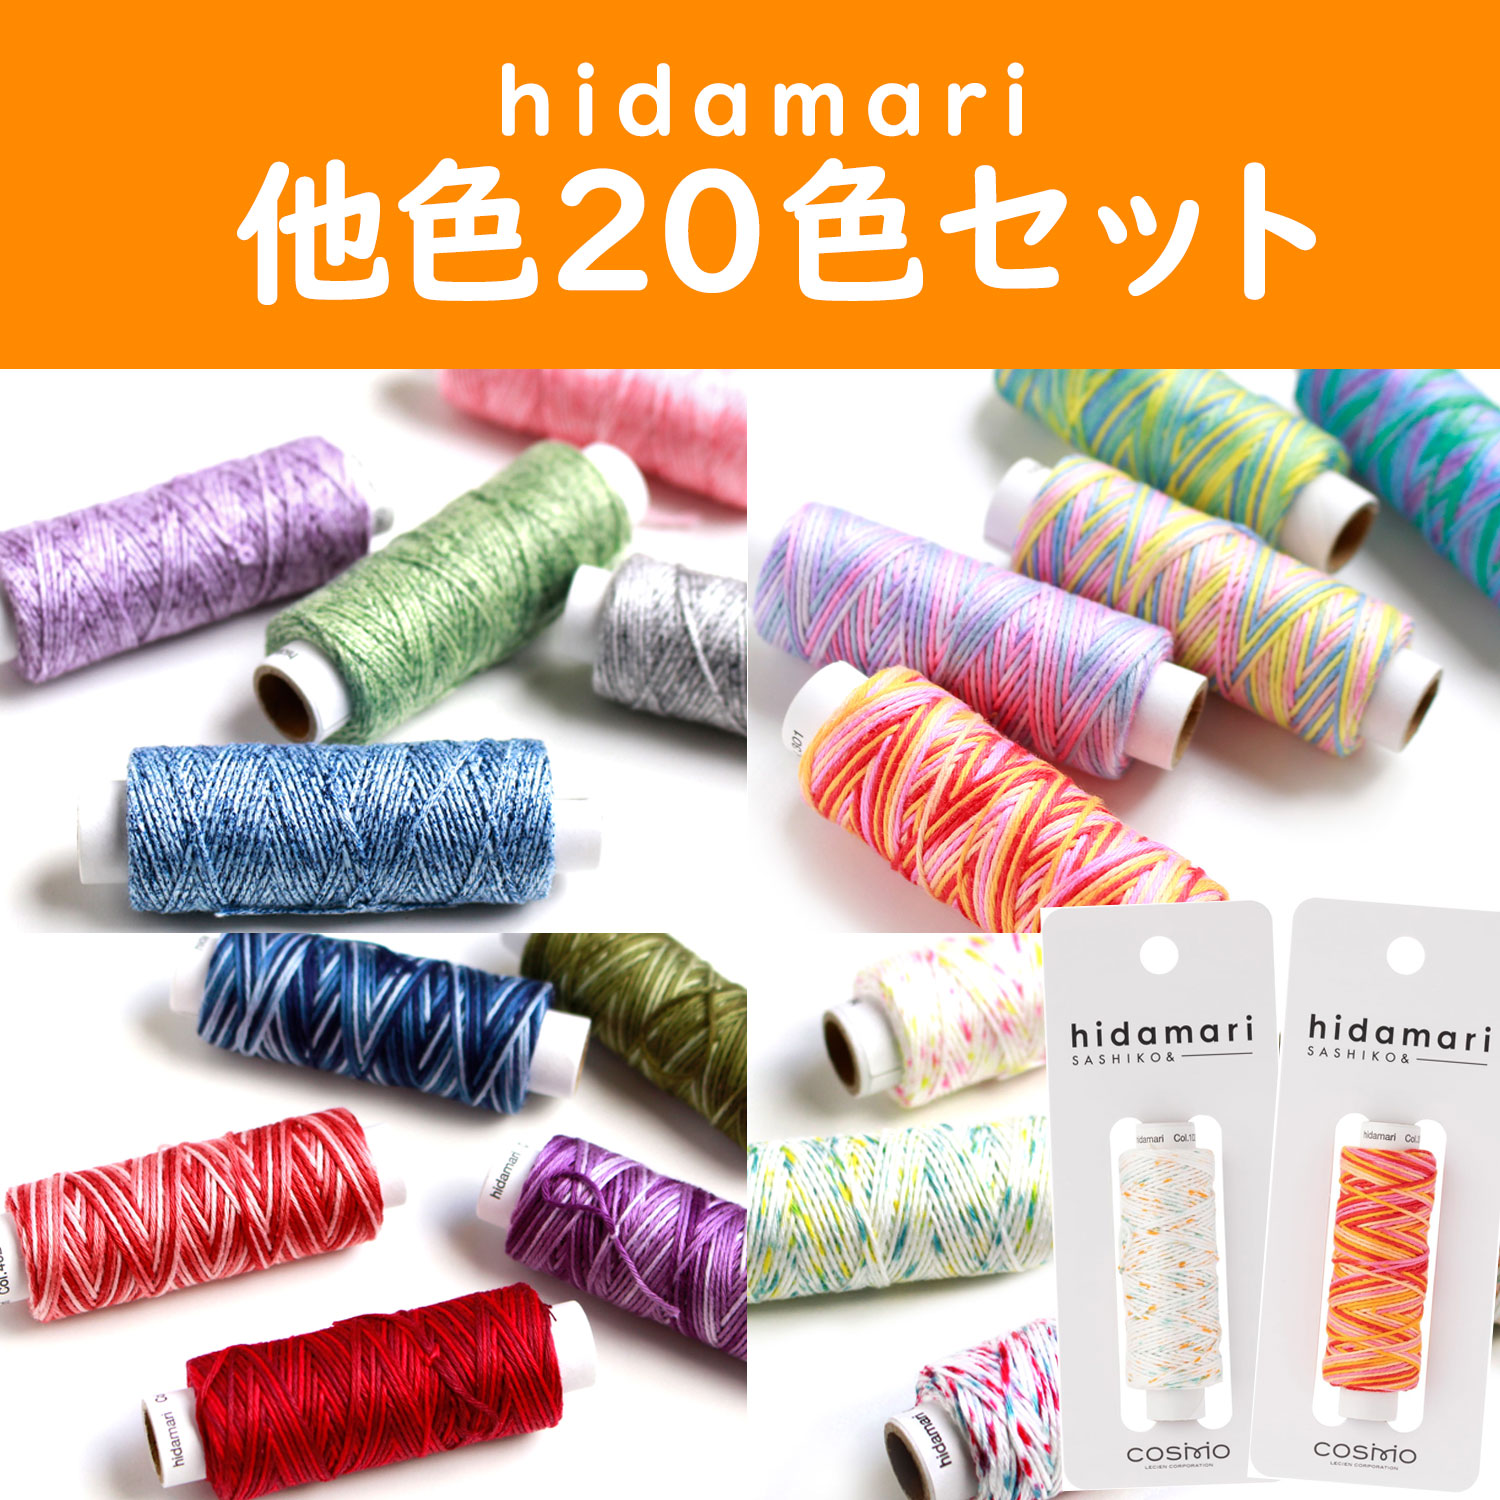 コスモ - hidamari -「手芸材料の卸売りサイトChuko Online」